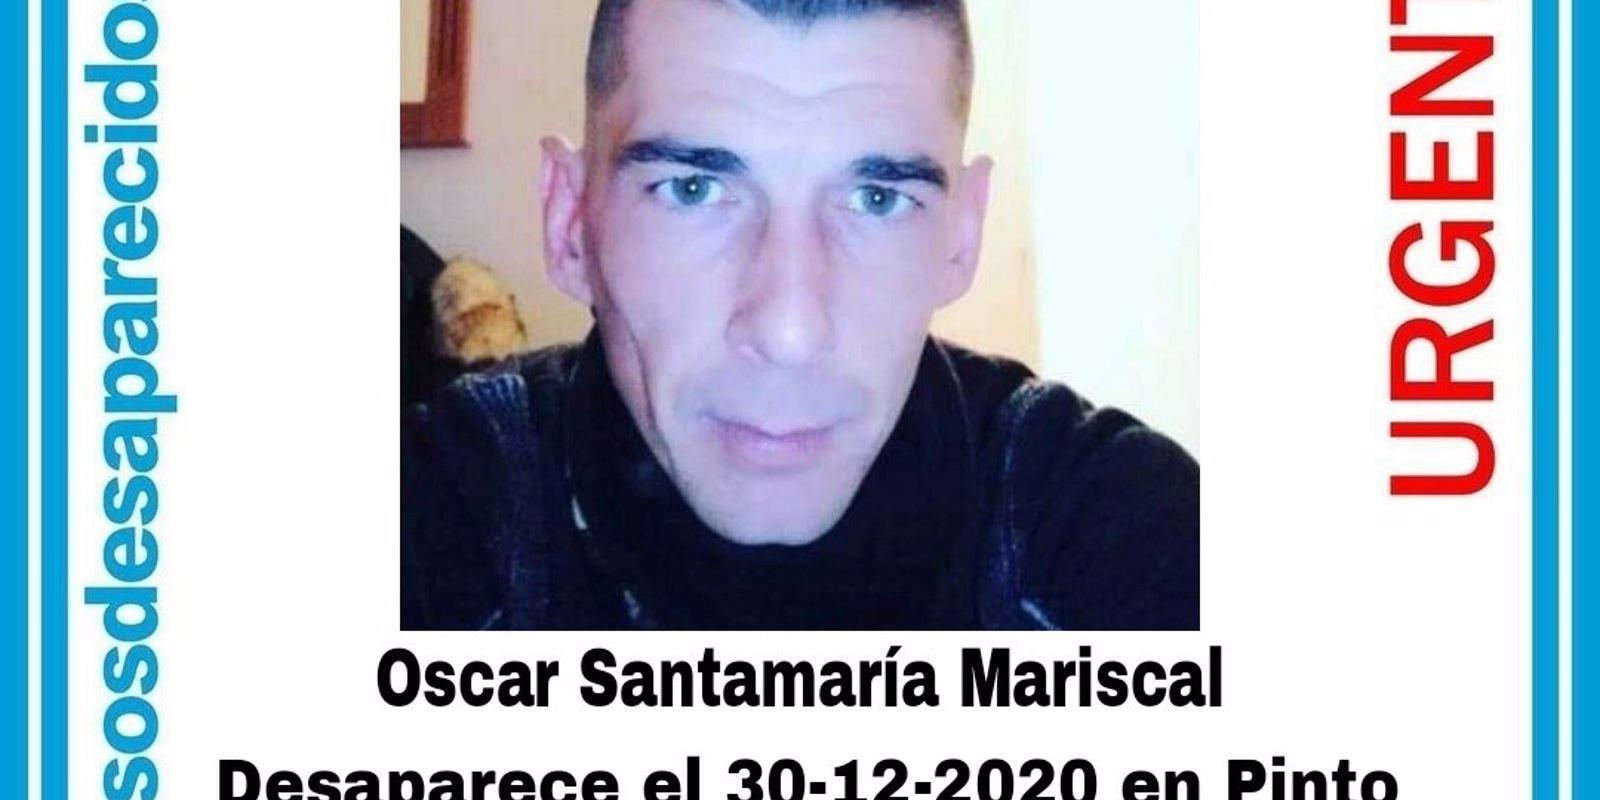 Buscan a un hombre de 39 años desaparecido en Pinto el pasado 30 de diciembre